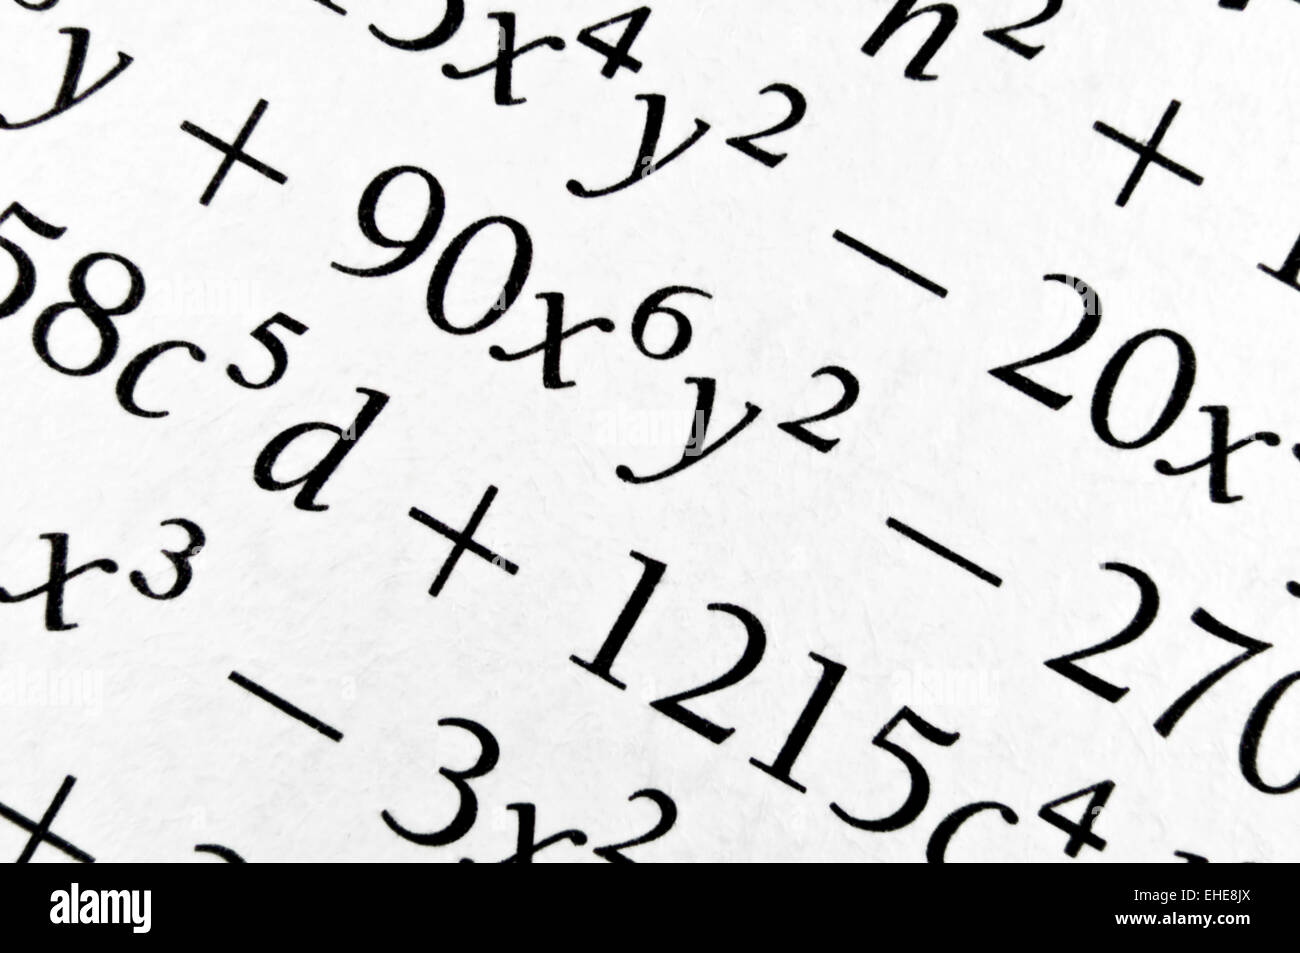 Algebra formulas close up. Stock Photo